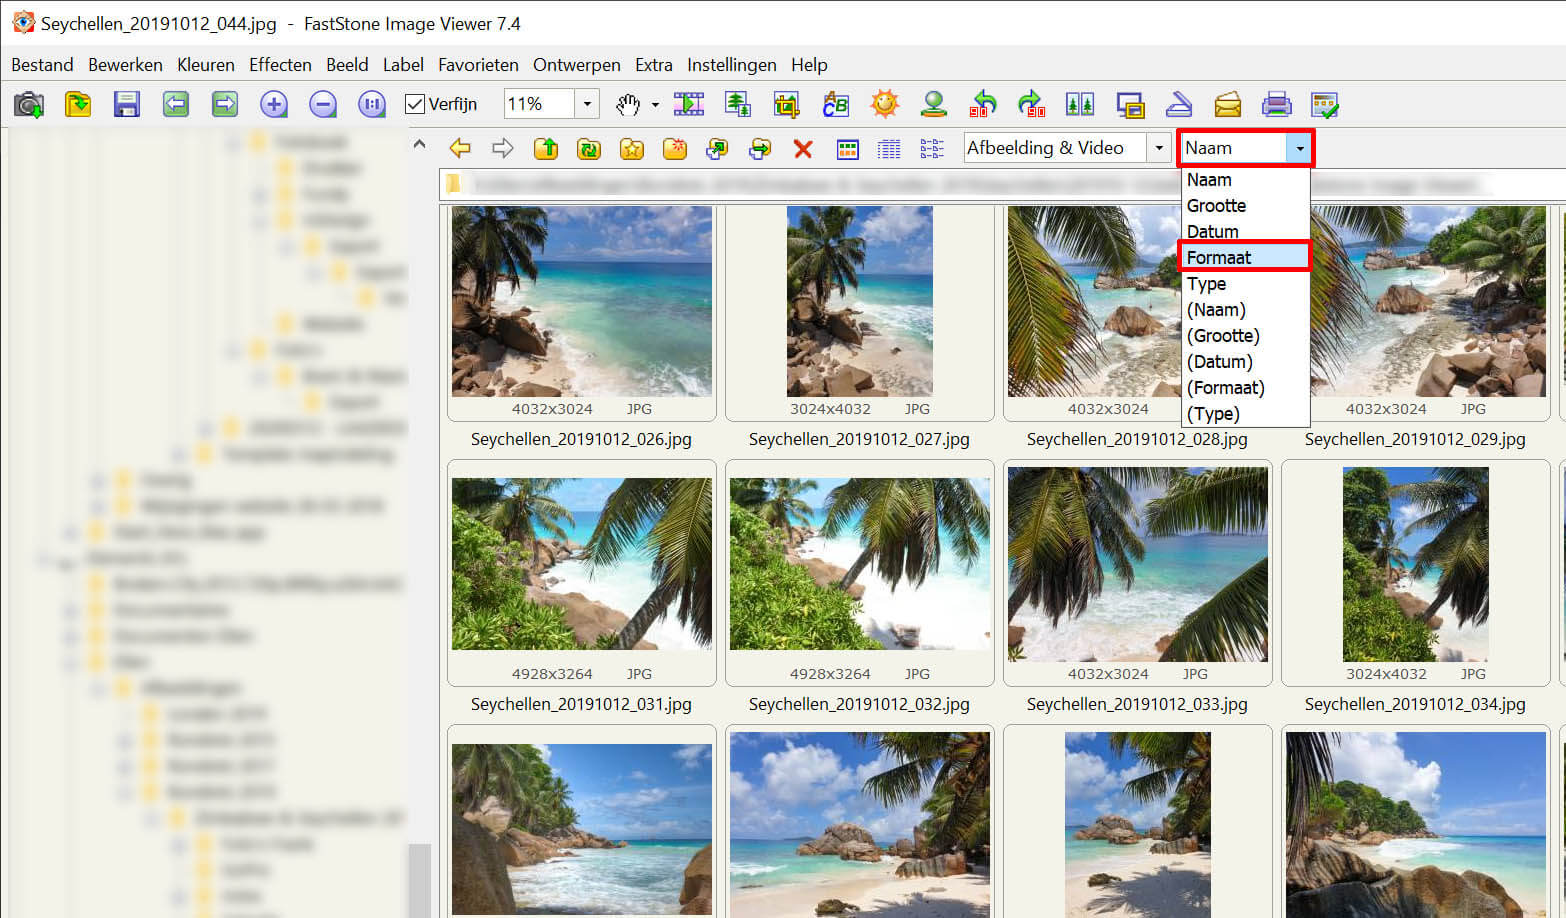 Uitleg hoe je kunt sorteren op Formaat in FastStone Image Viewer